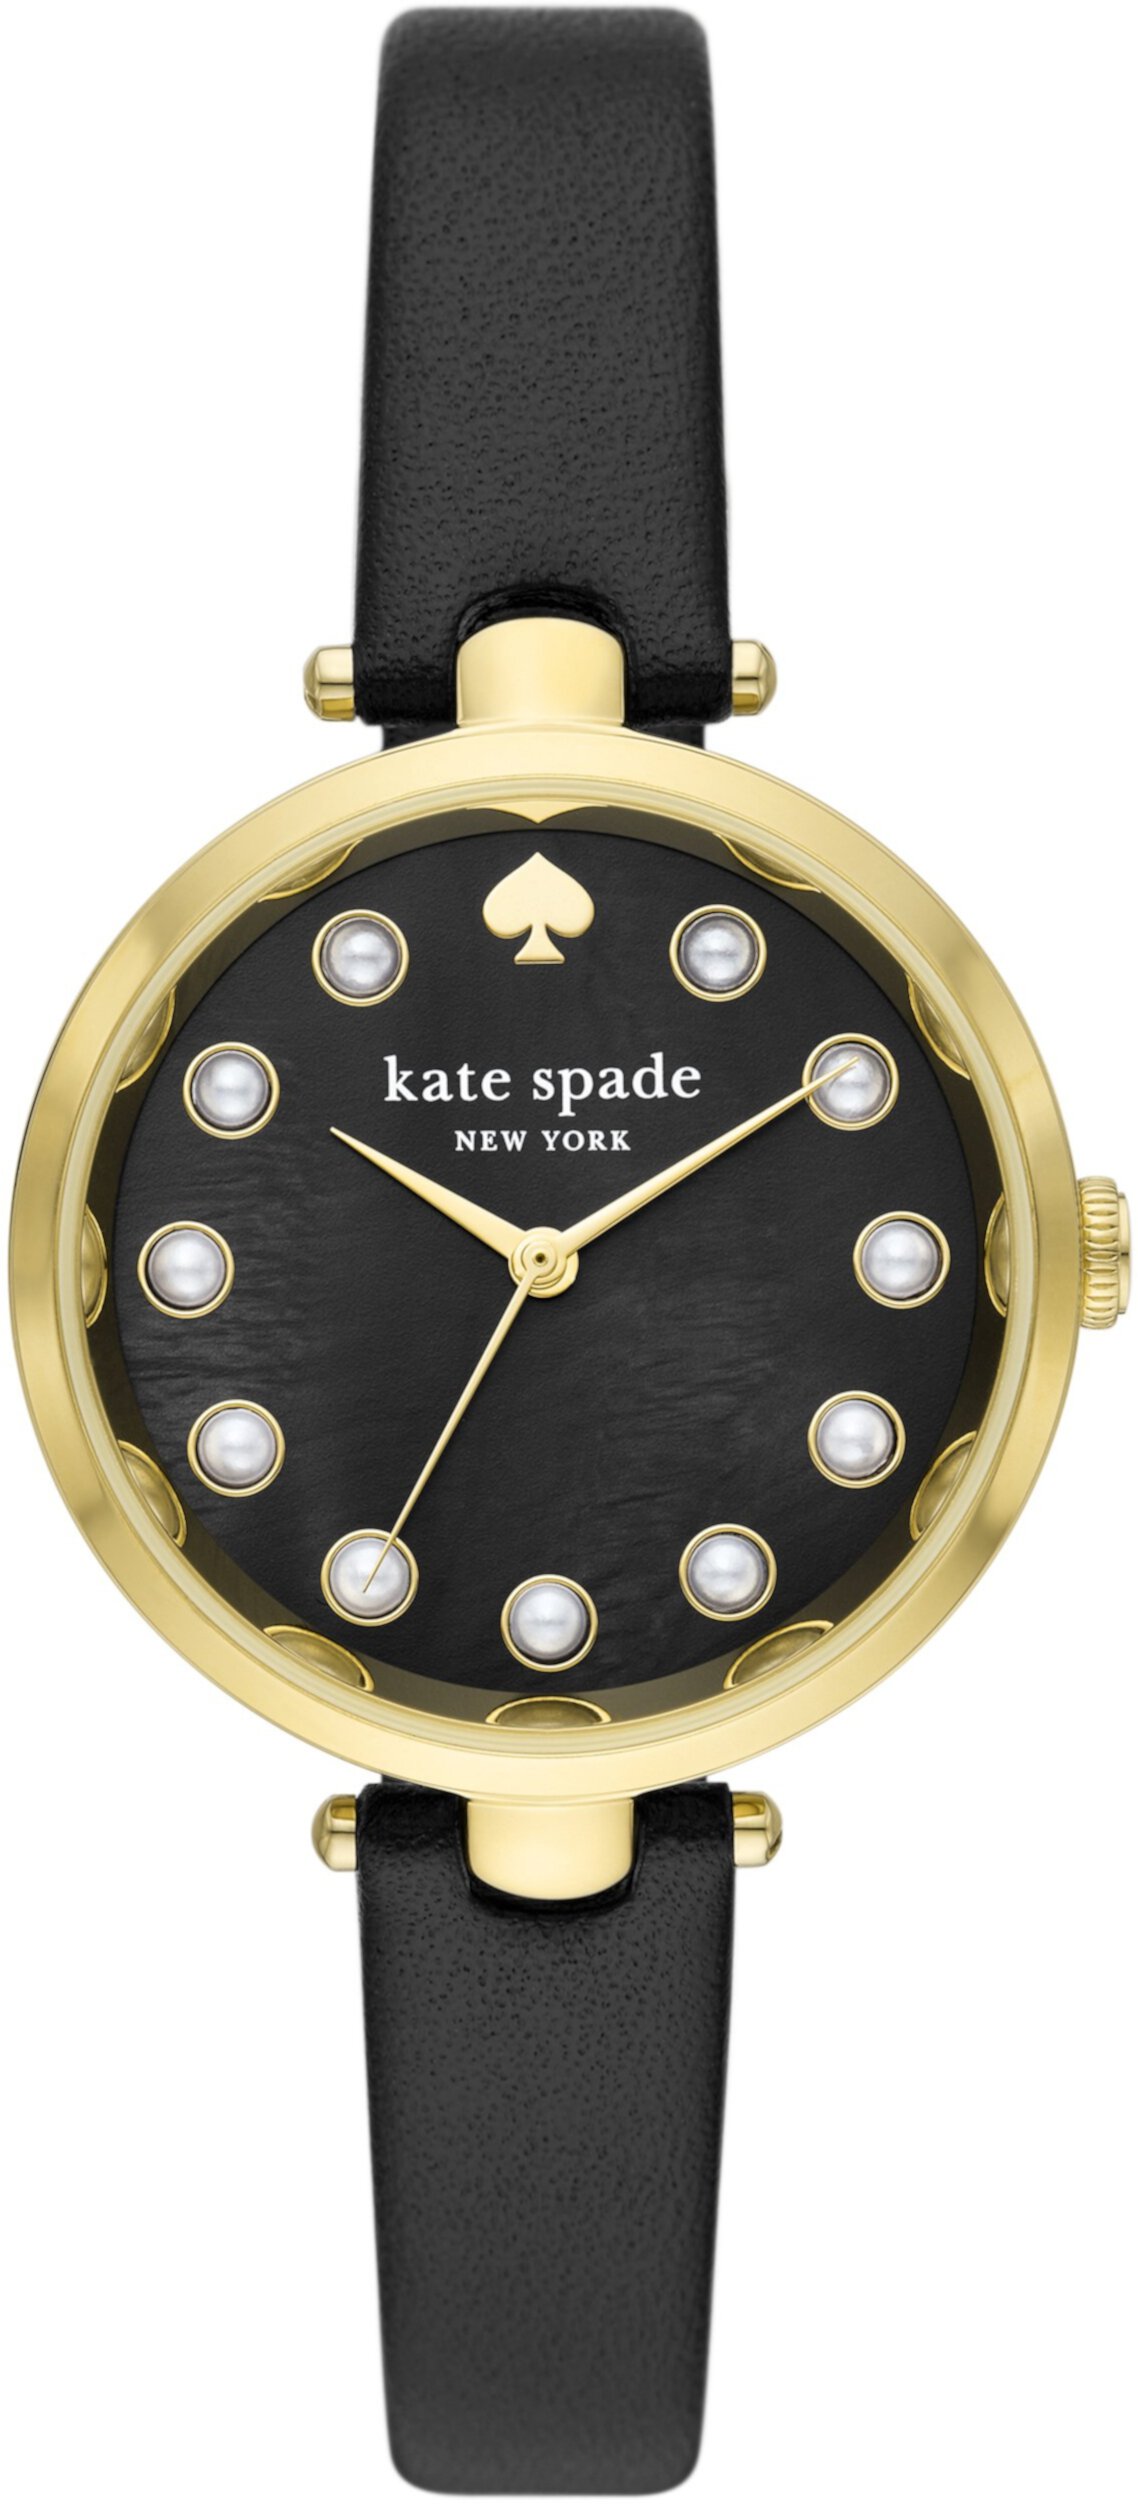 Голландские кожаные часы с тремя стрелками - KSW1808 Kate Spade New York